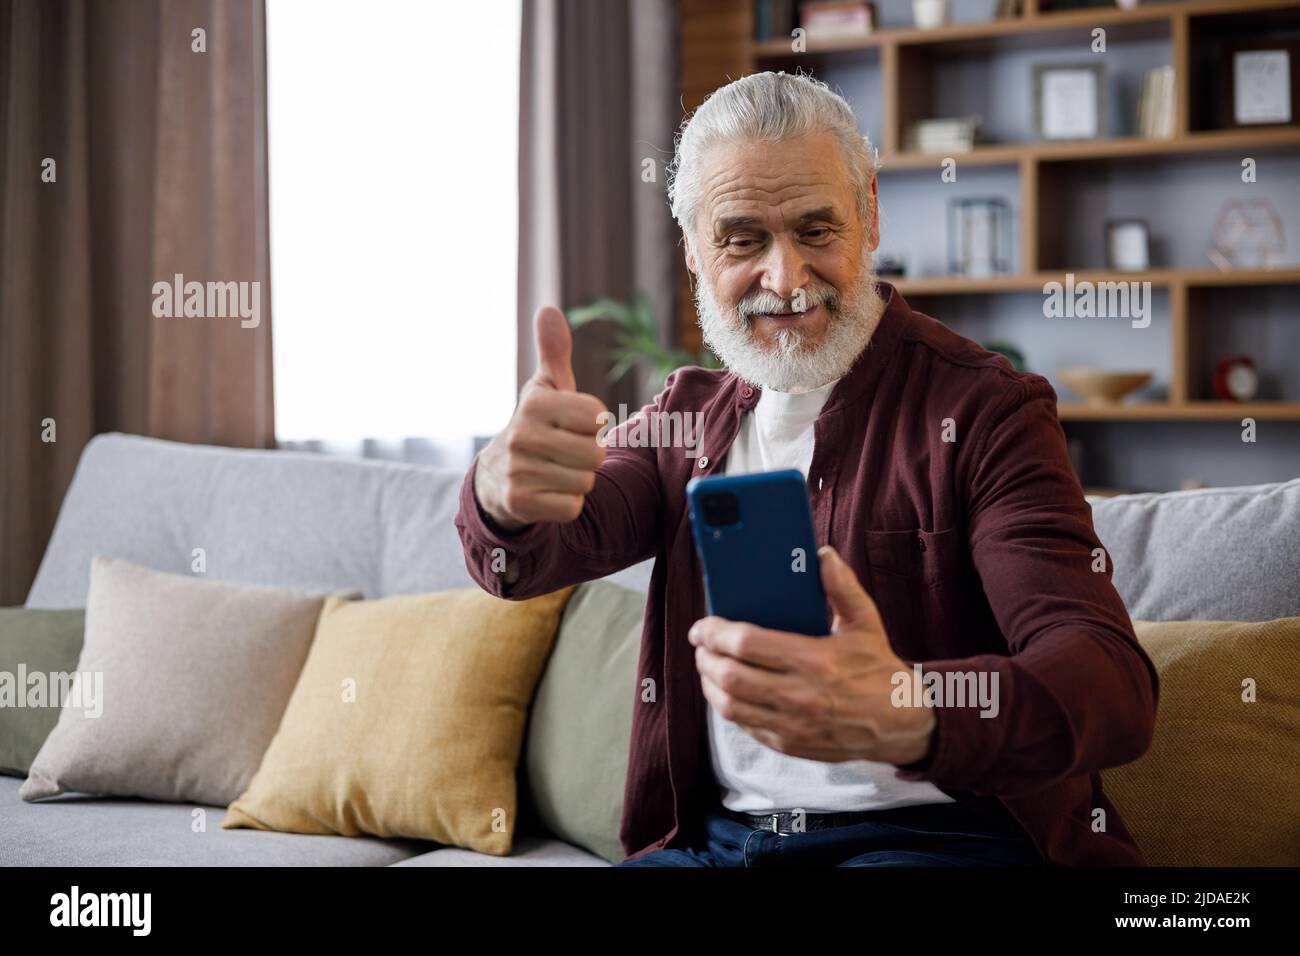 Lächelnder älterer Mann, der auf der Couch sitzt und den Daumen hochgibt, während er Computerspiele spielt, die Kamera anschaut und lächelt. Stockfoto